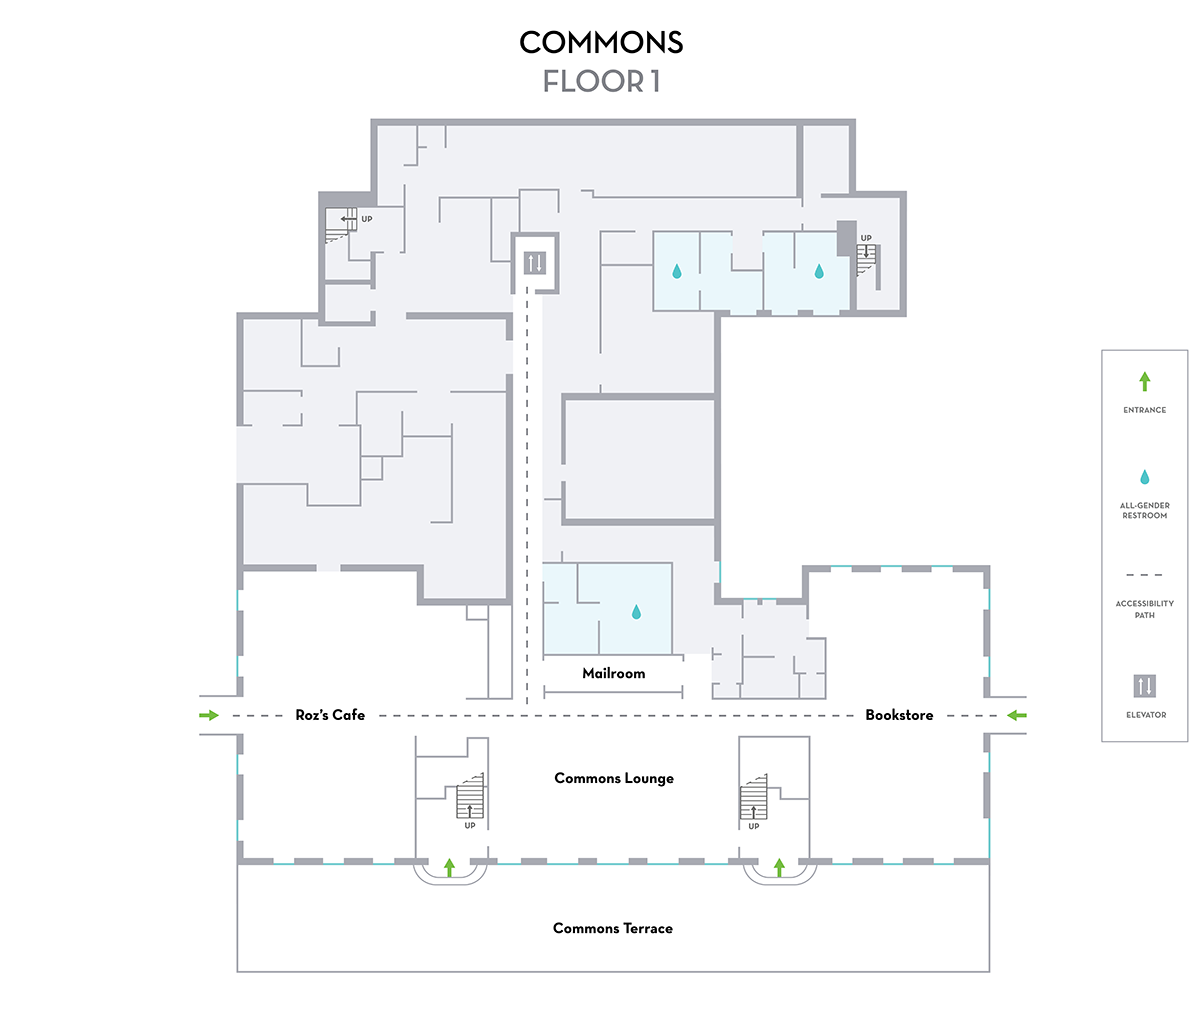 Commons Map Floor 1